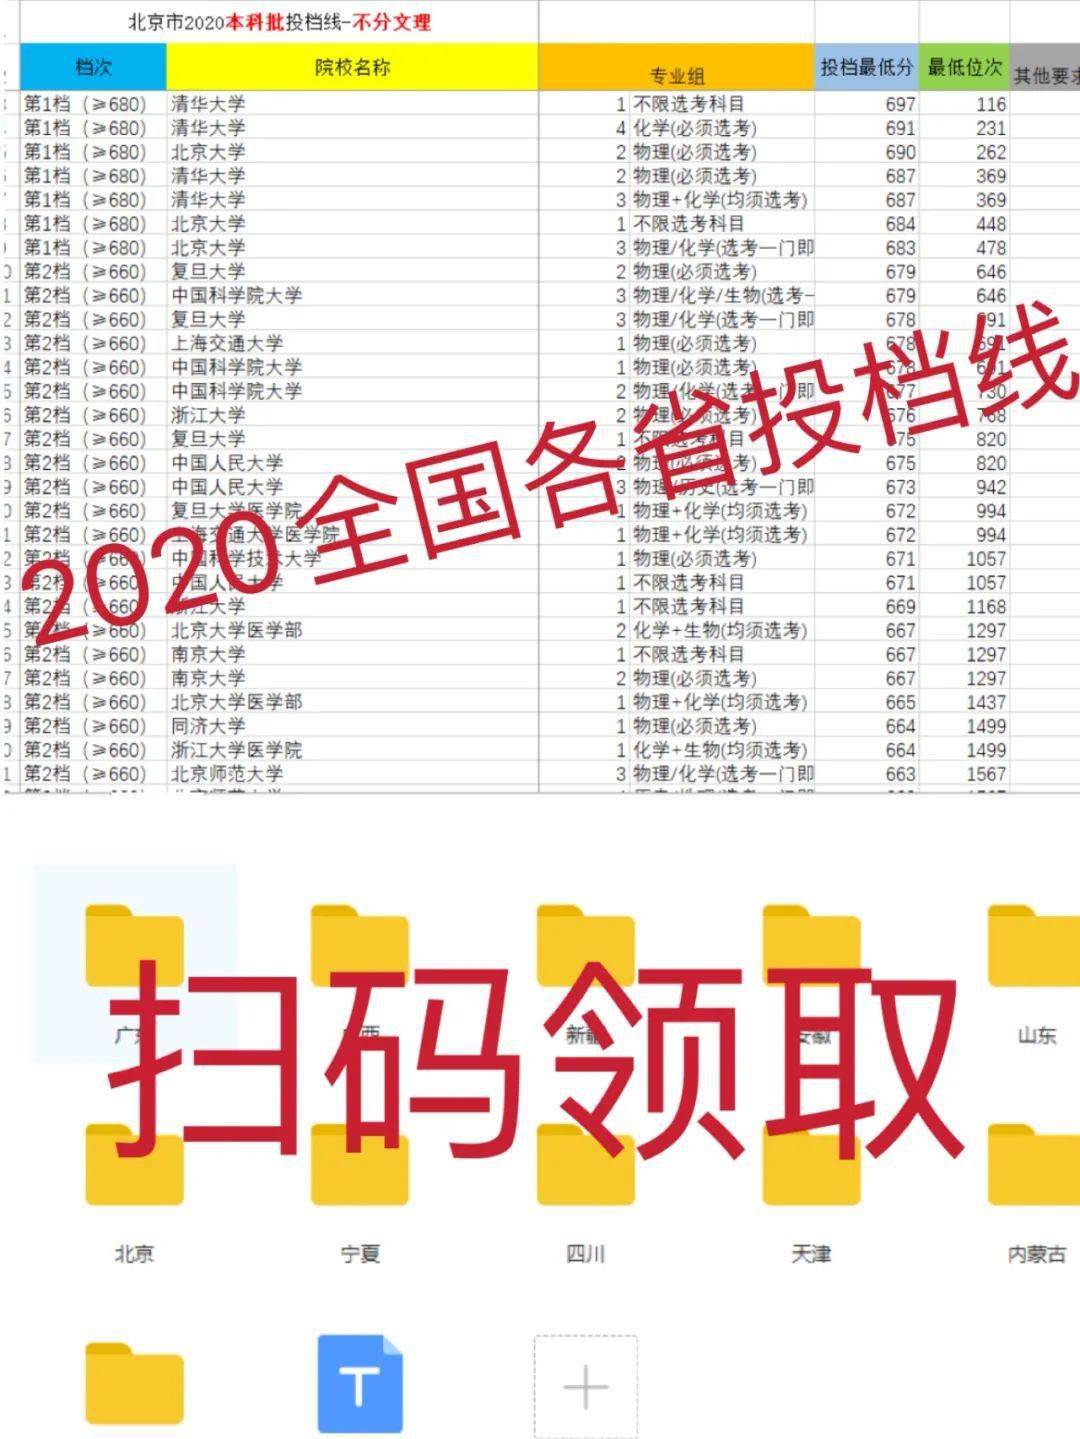 2020高考北京学校排名_2020年北京市高校一流专业排名:60所高校上榜,北京师